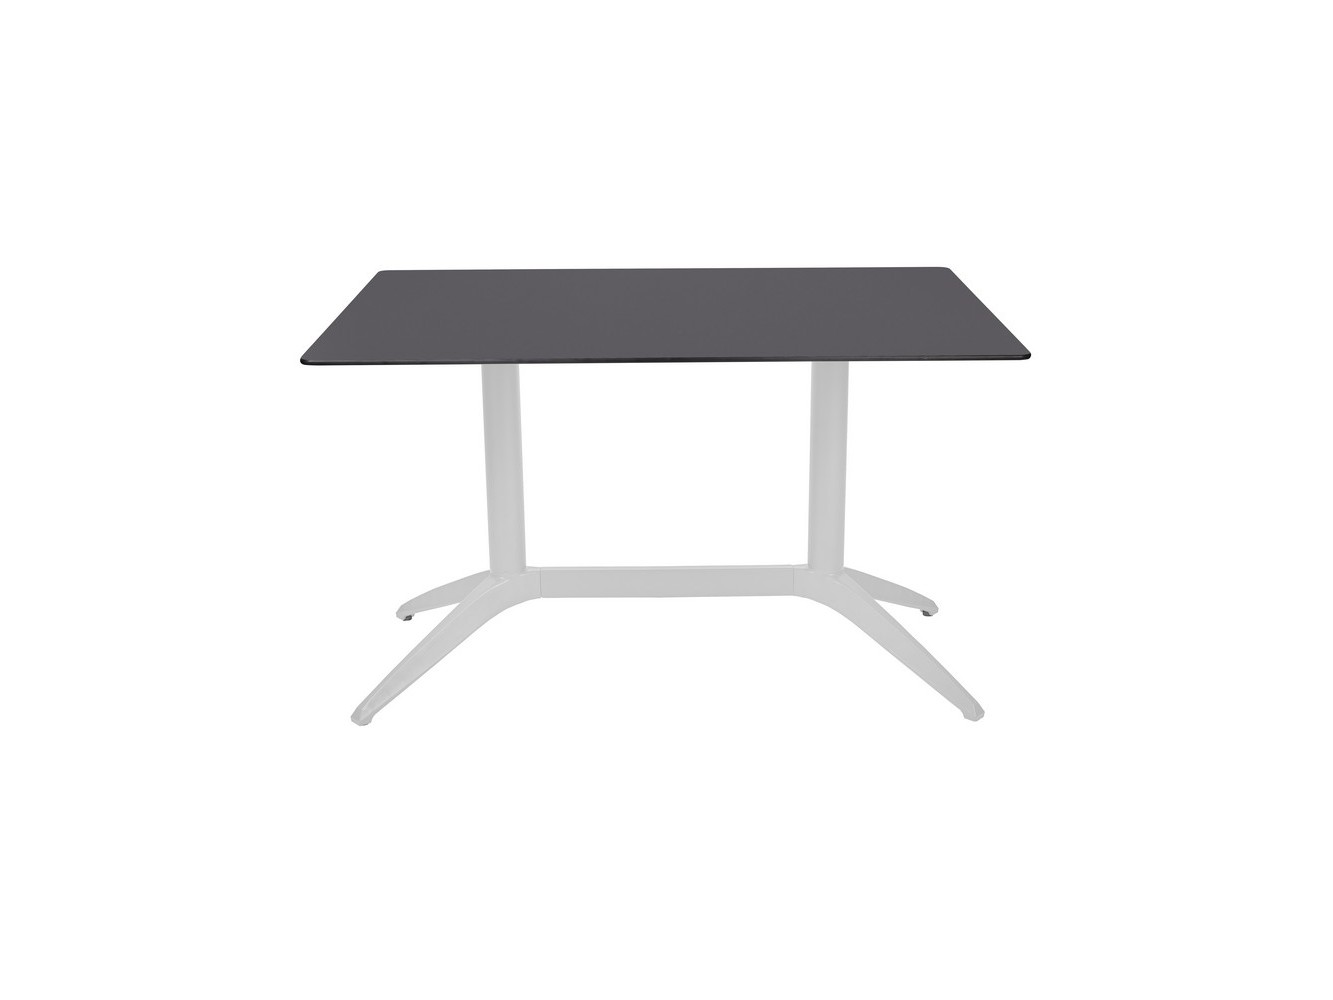 Table Quatro Duo Fix